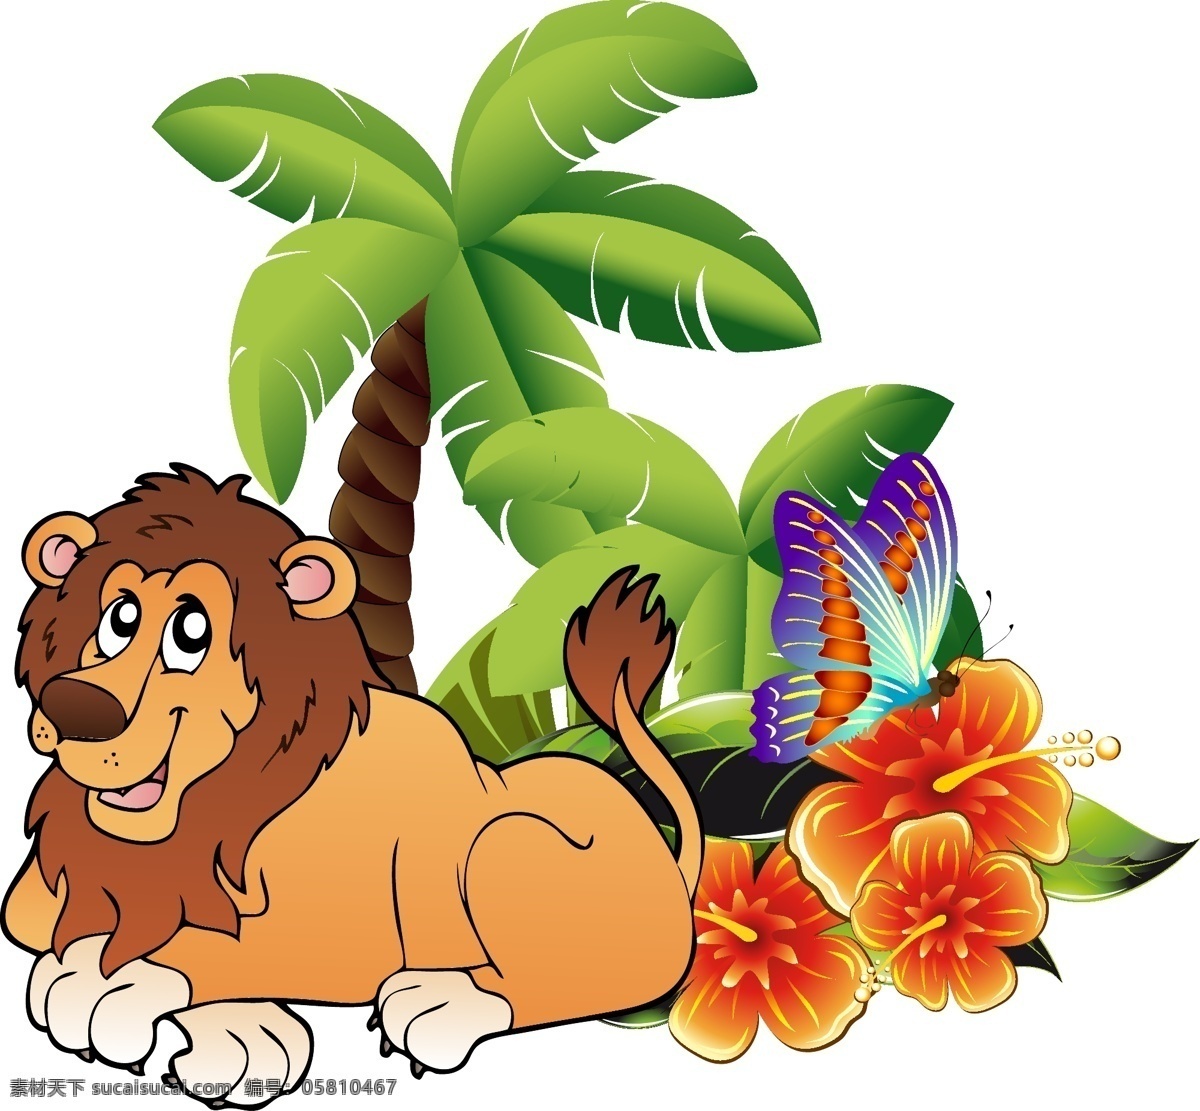 卡通动物设计 蝴蝶 狮子 树 花 绿叶 卡通动物 动物场景设计